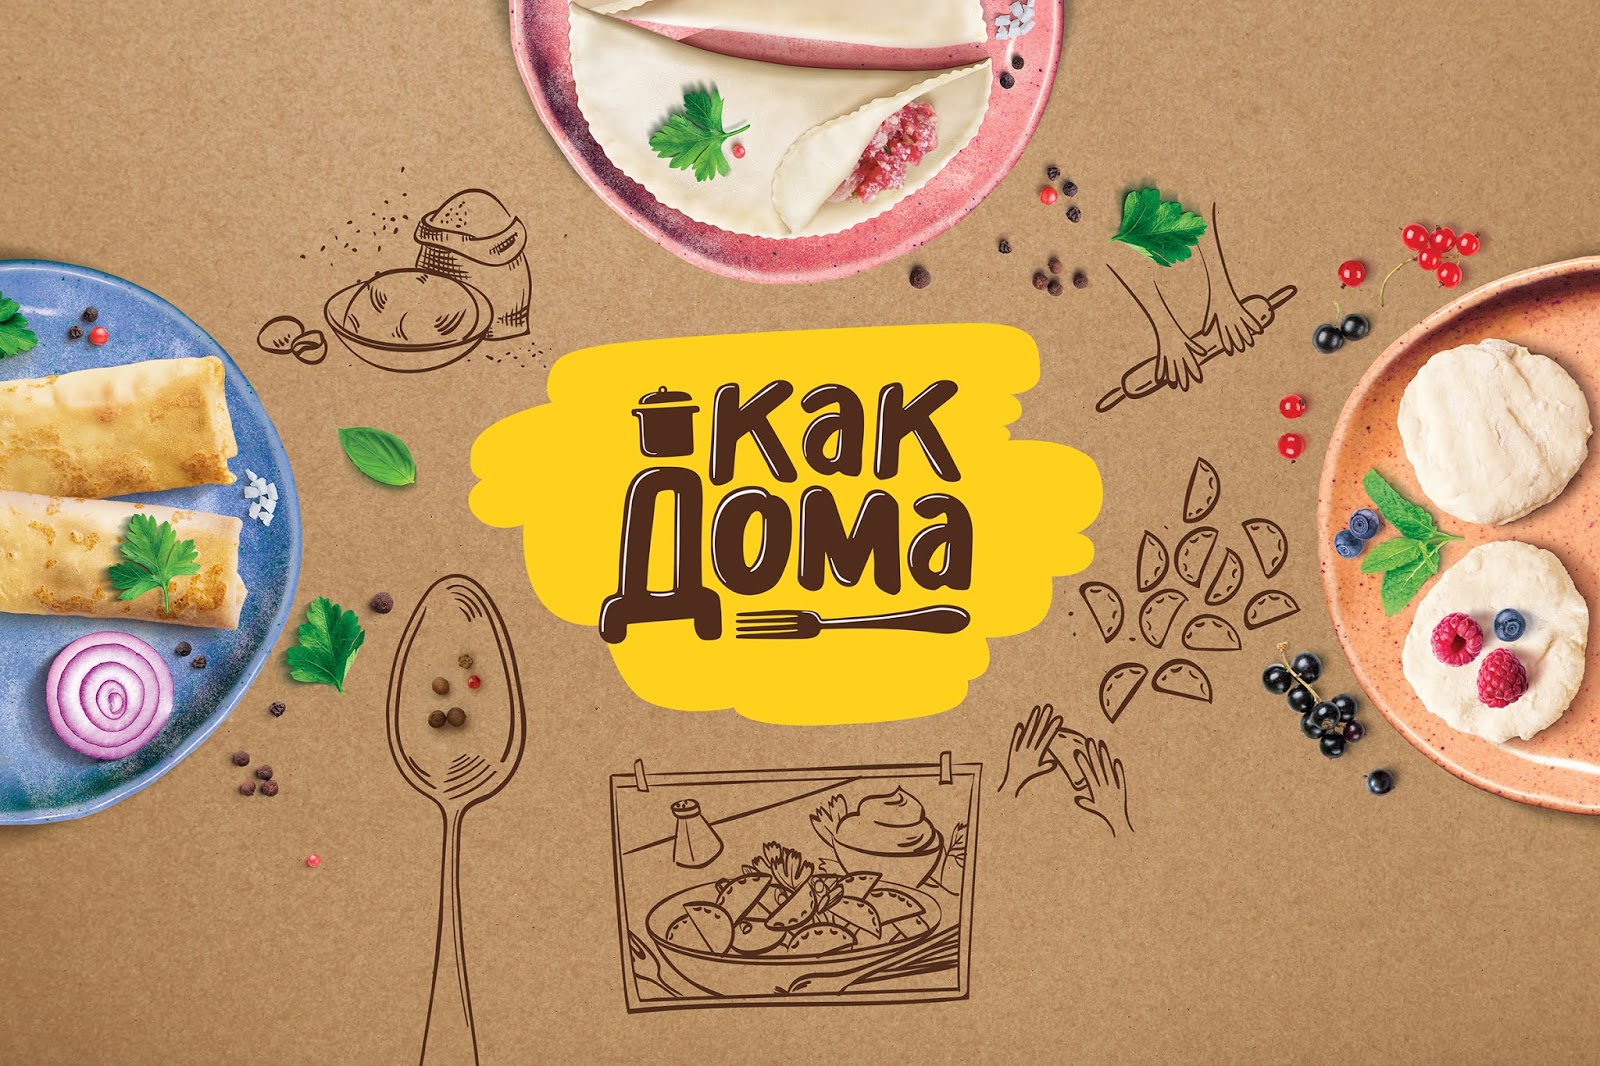 速食水饺食品西安kok在哪里_kok全站娱乐
品牌策划包装设计VI设计